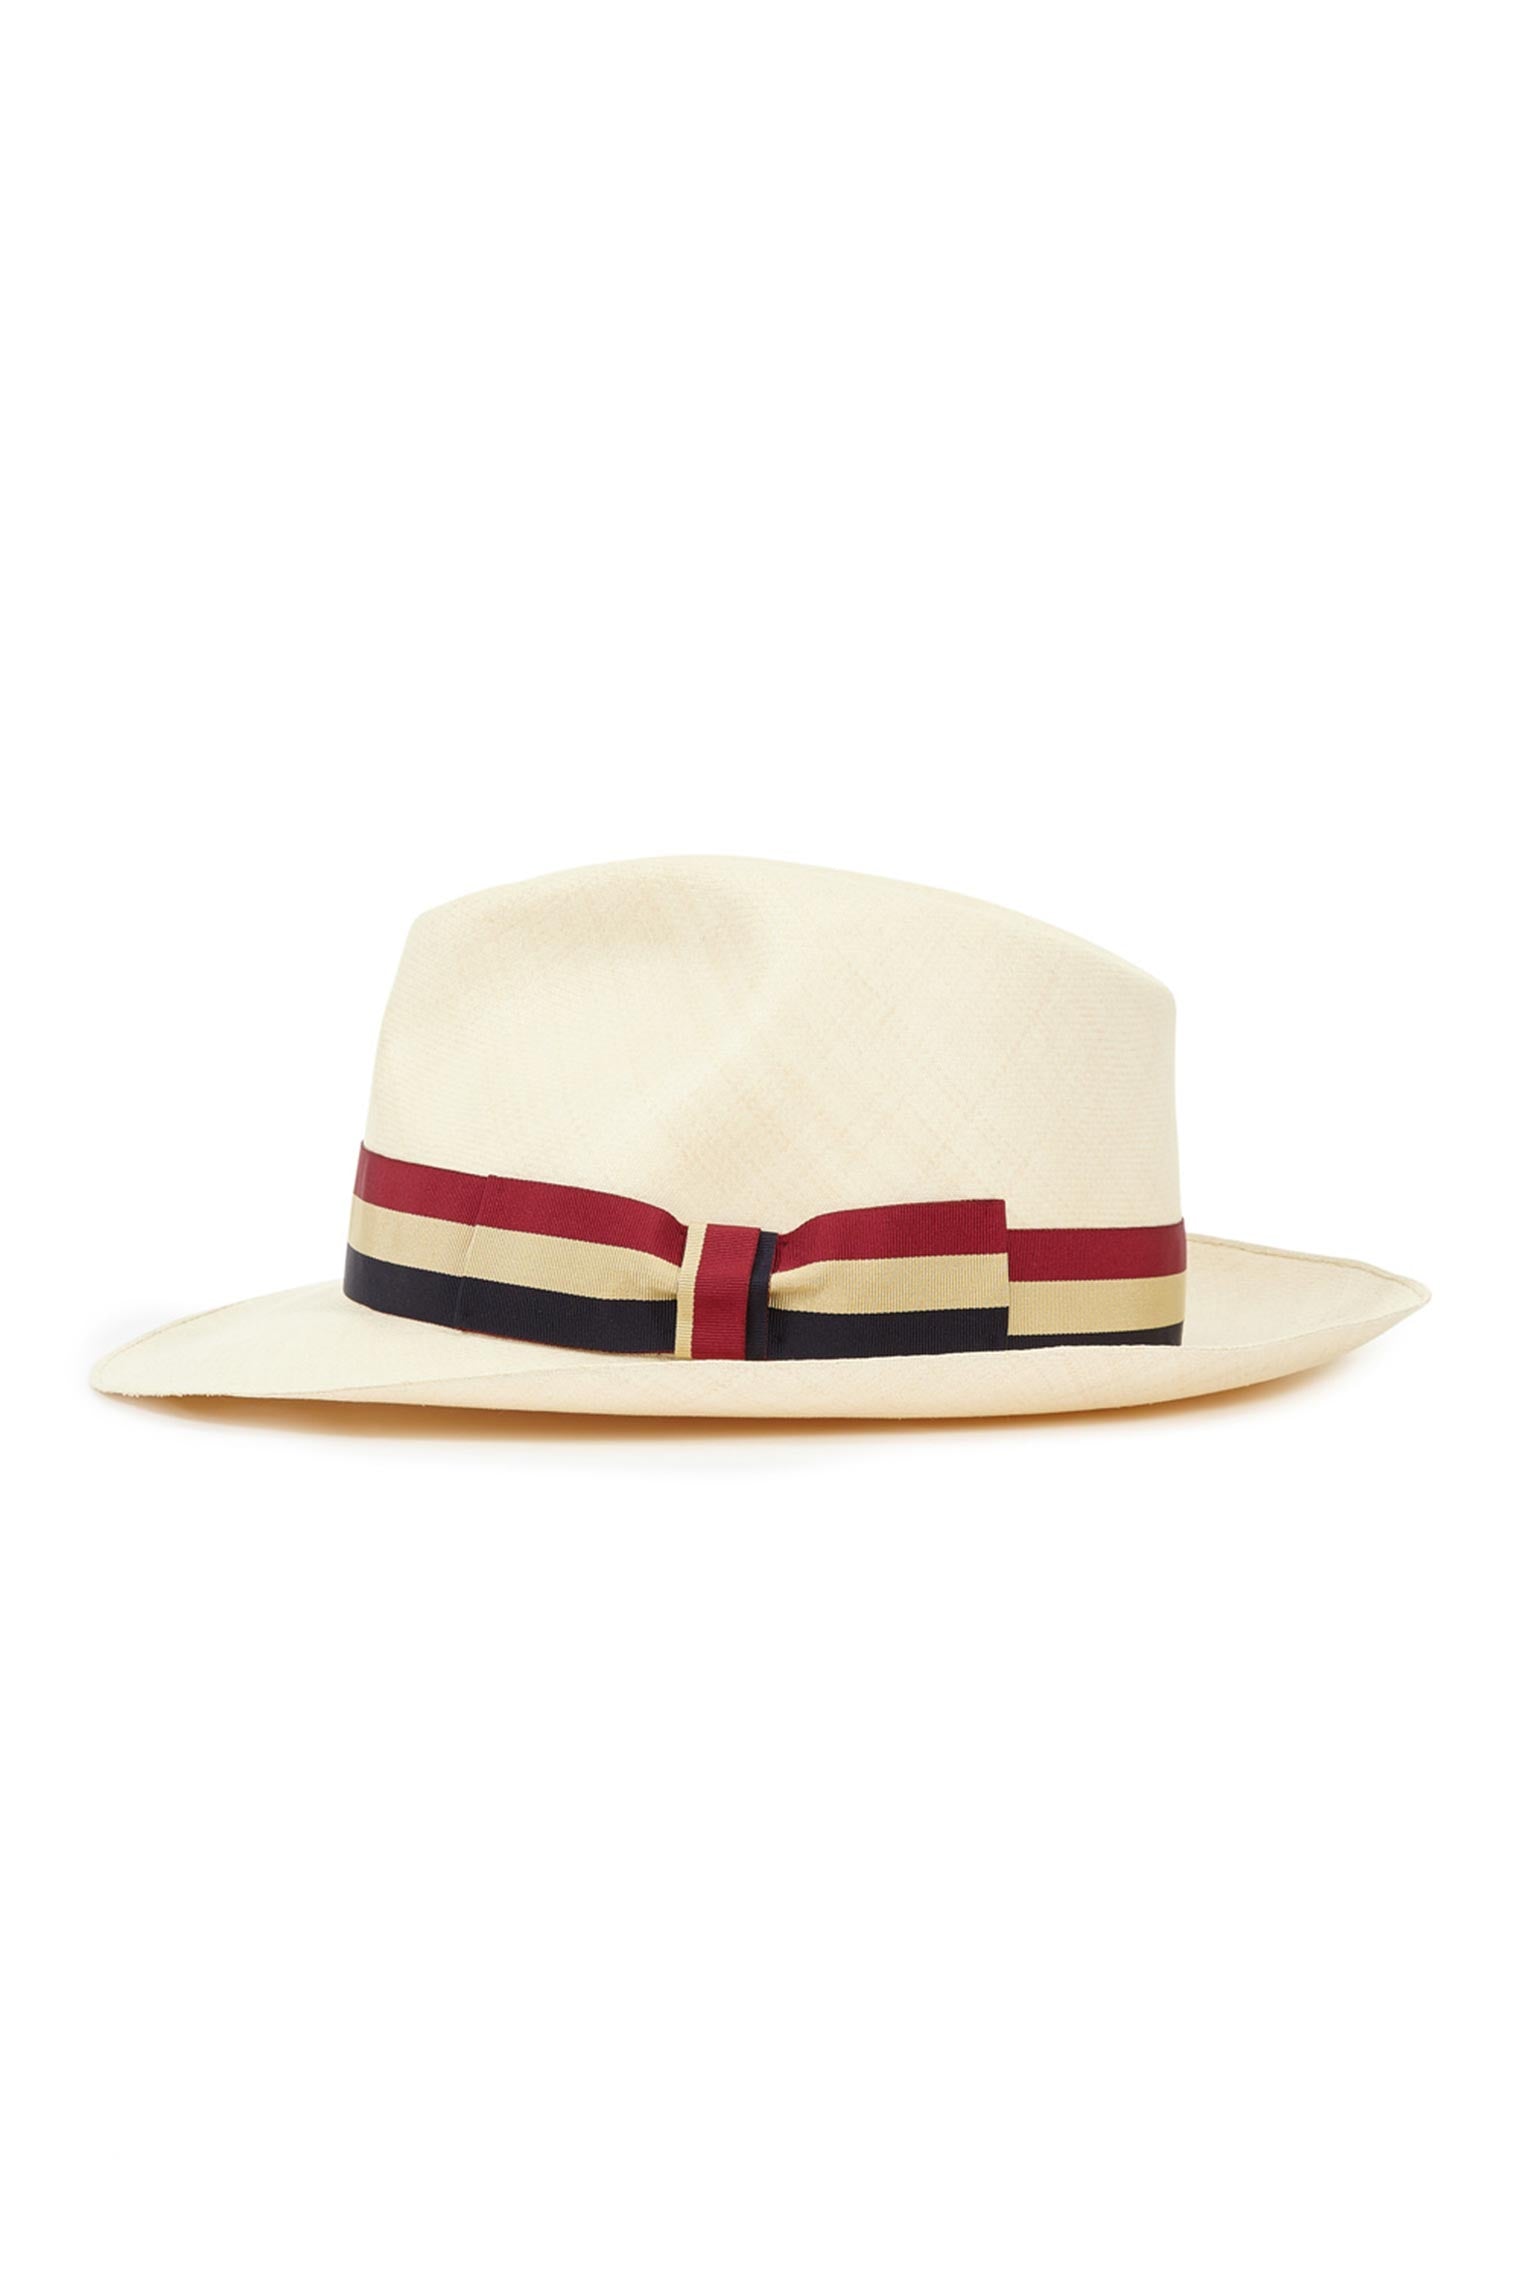 Bespoke Ultra-Fine Montecristi Panama - Panamas, Straw and Sun Hats for Men - Lock & Co. Hatters London UK